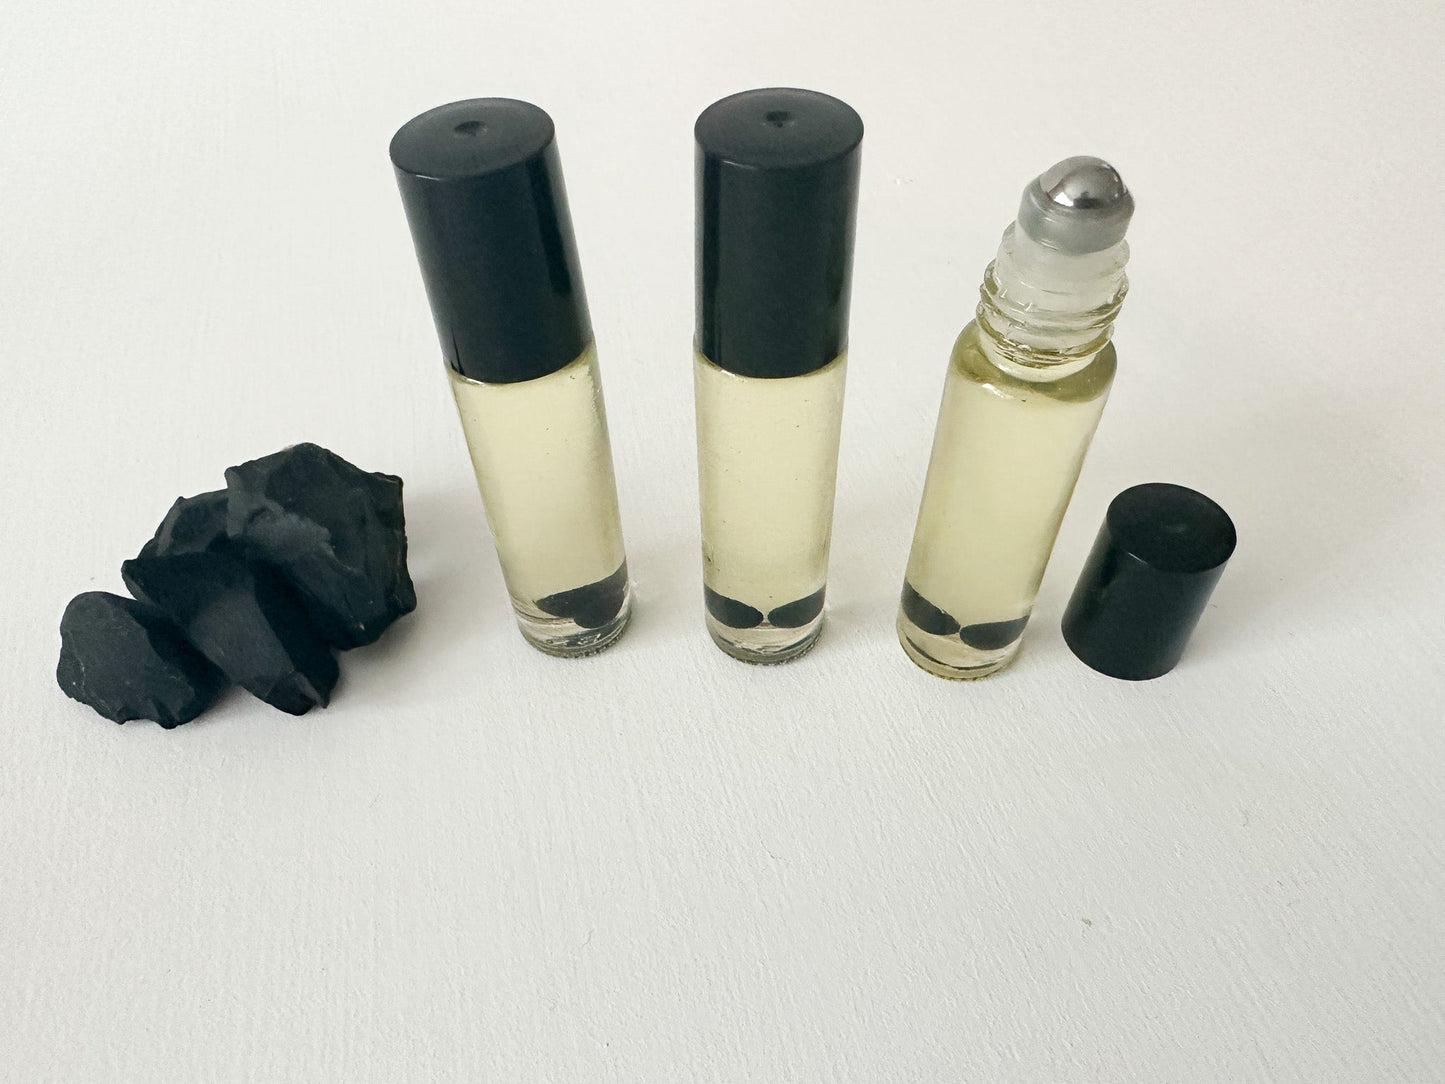 Fragrance oils C60